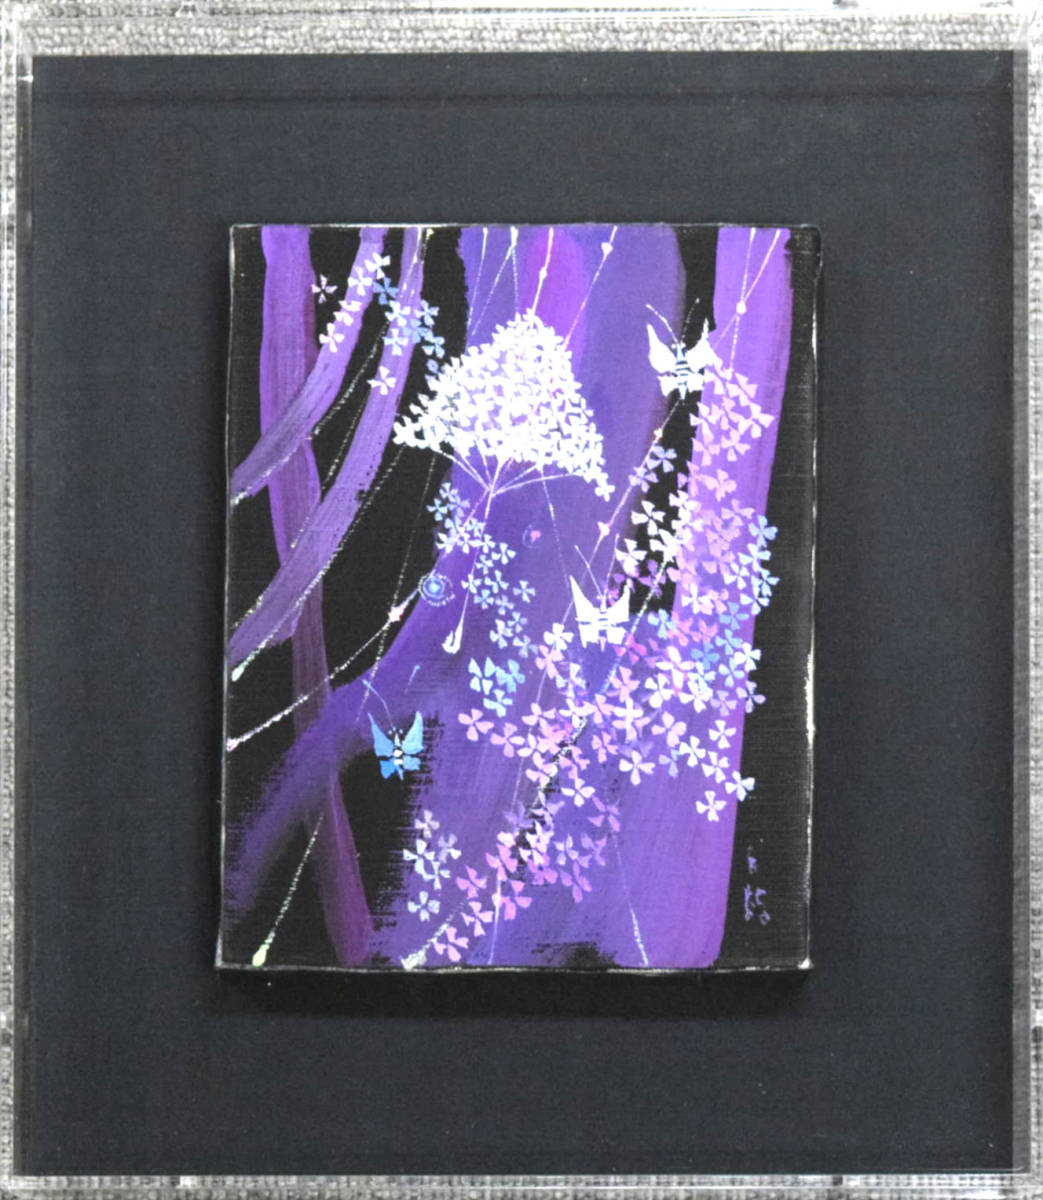 [Garantía auténtica] Pintura al óleo de fantasía floral de Yoshitaka Hayakawa de Thumb Hole/Presidente honorario de Shinkaijusha, Cuadro, Pintura al óleo, Naturaleza, Pintura de paisaje